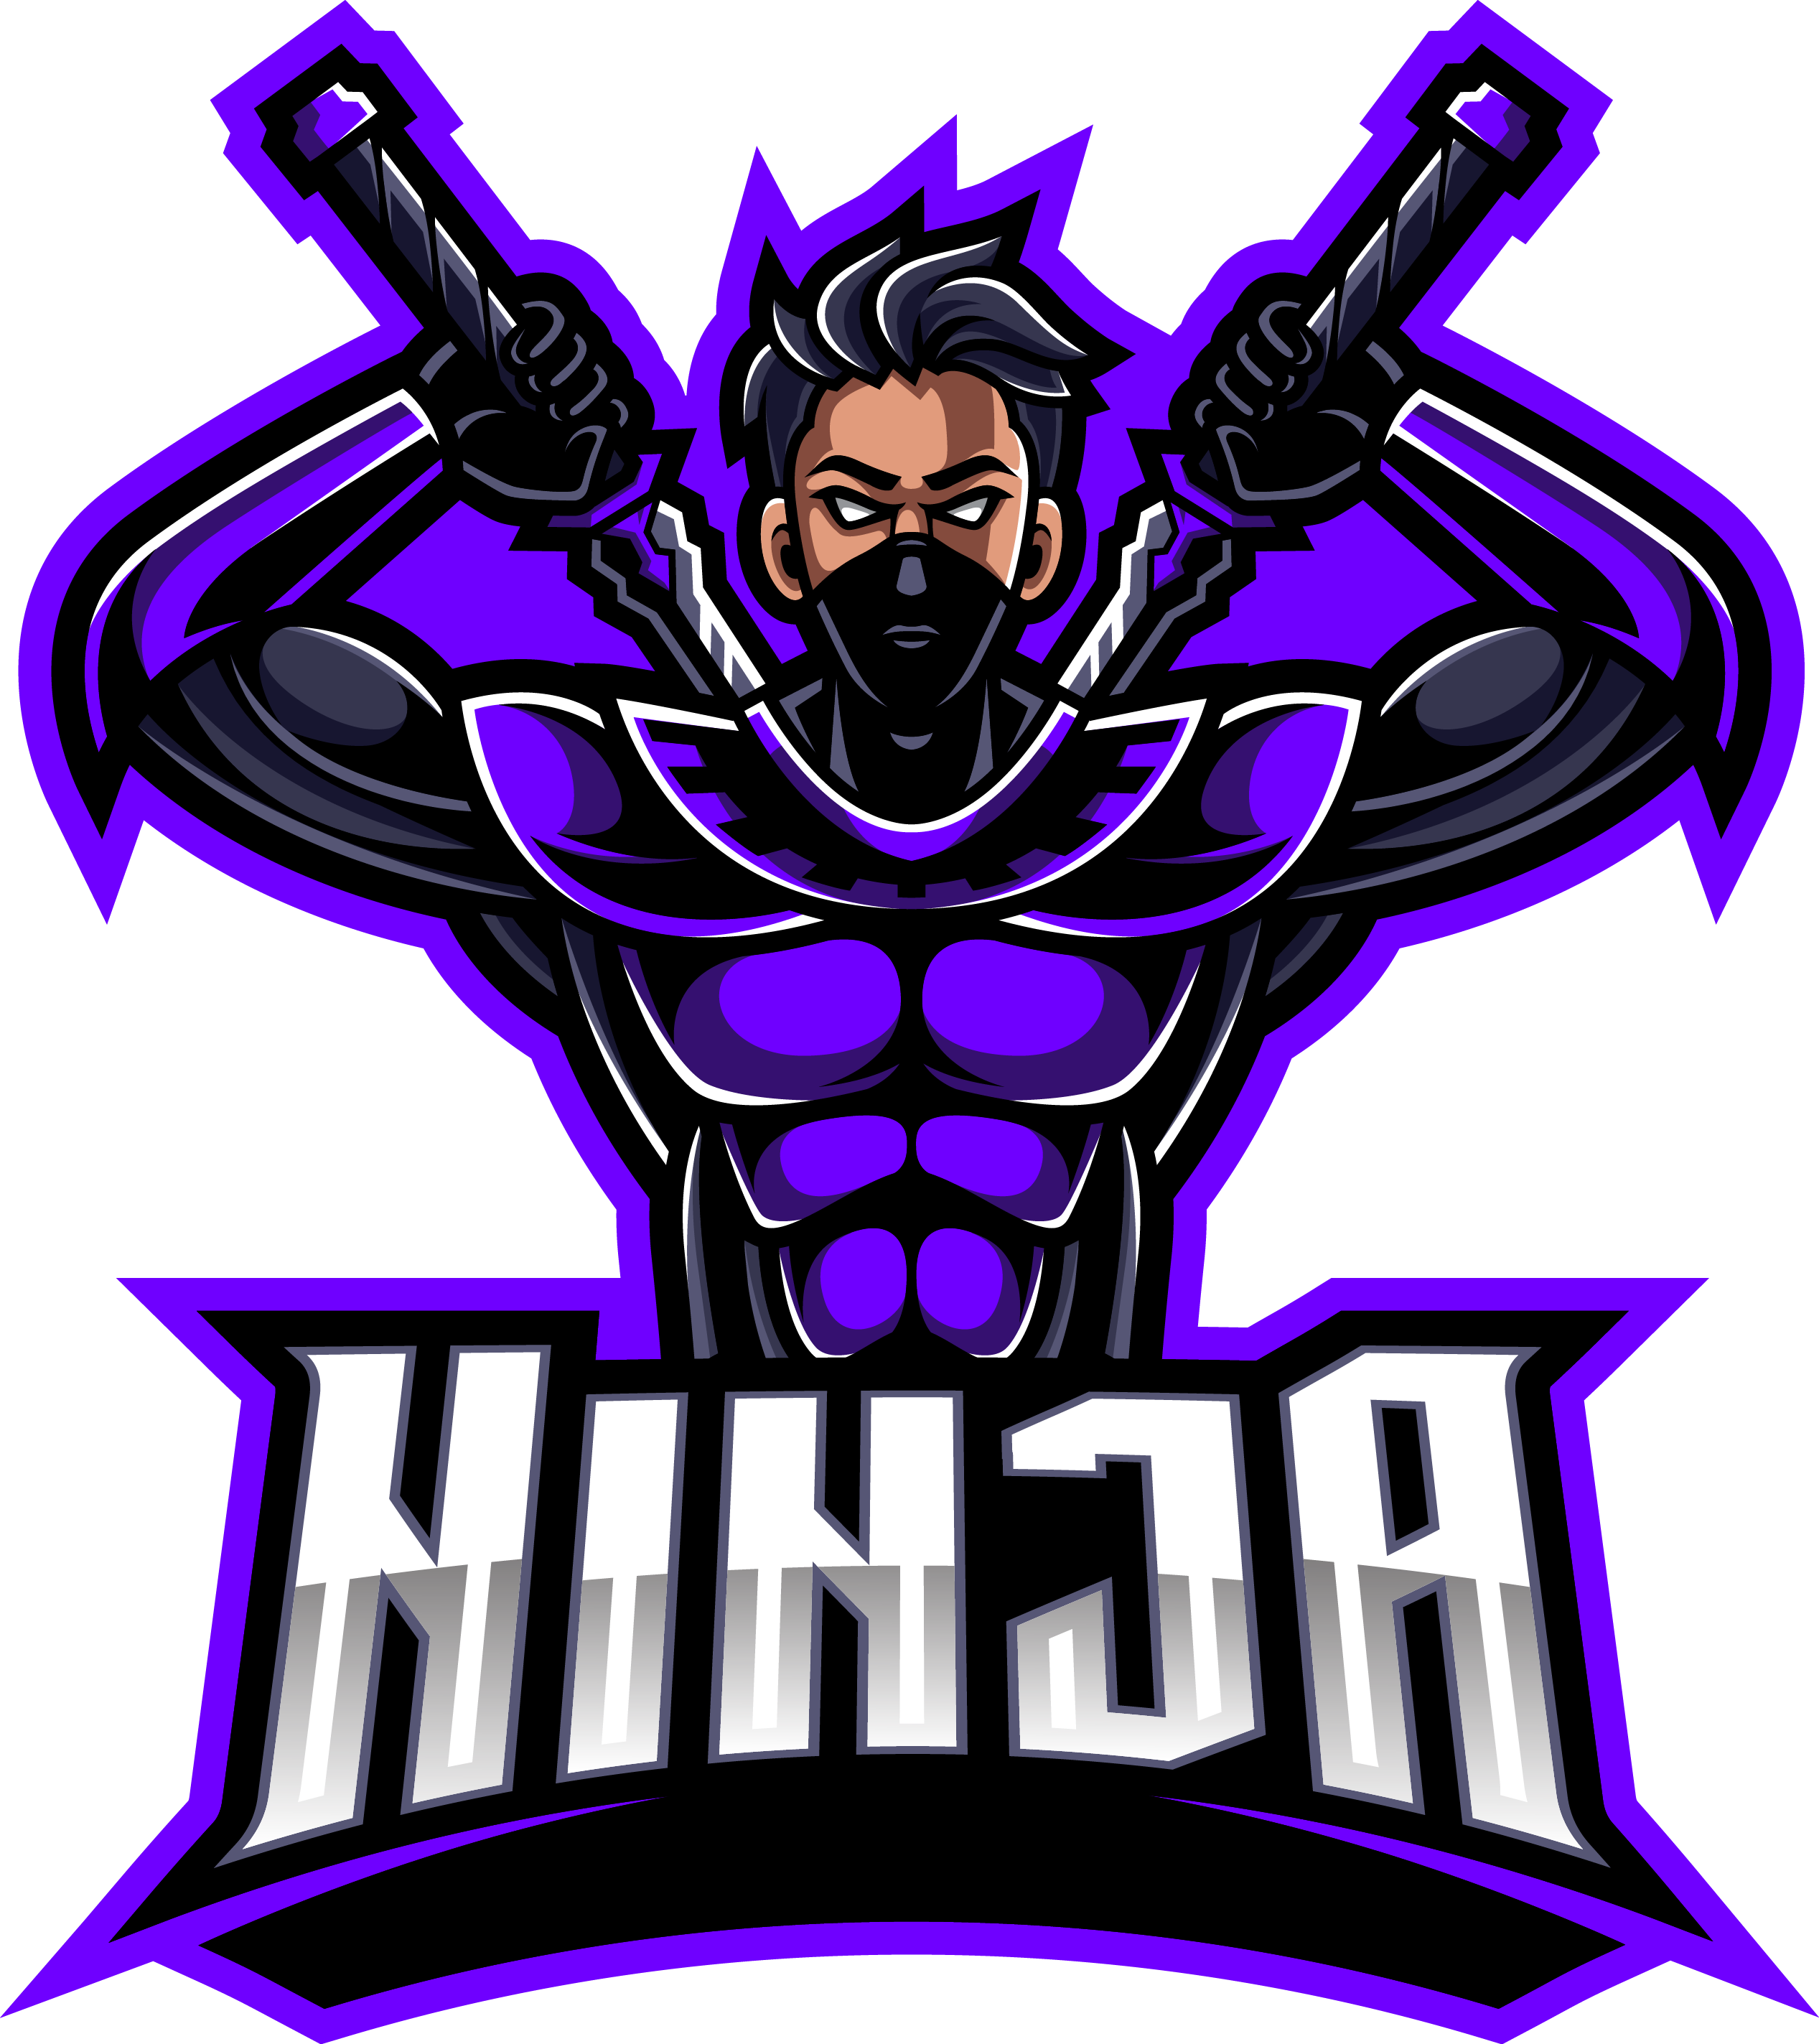 Gamer Ninja Mascot Logo Gamer Ninja eSports Logo Gaming Logo - Lobotz LTD, logo  gamer